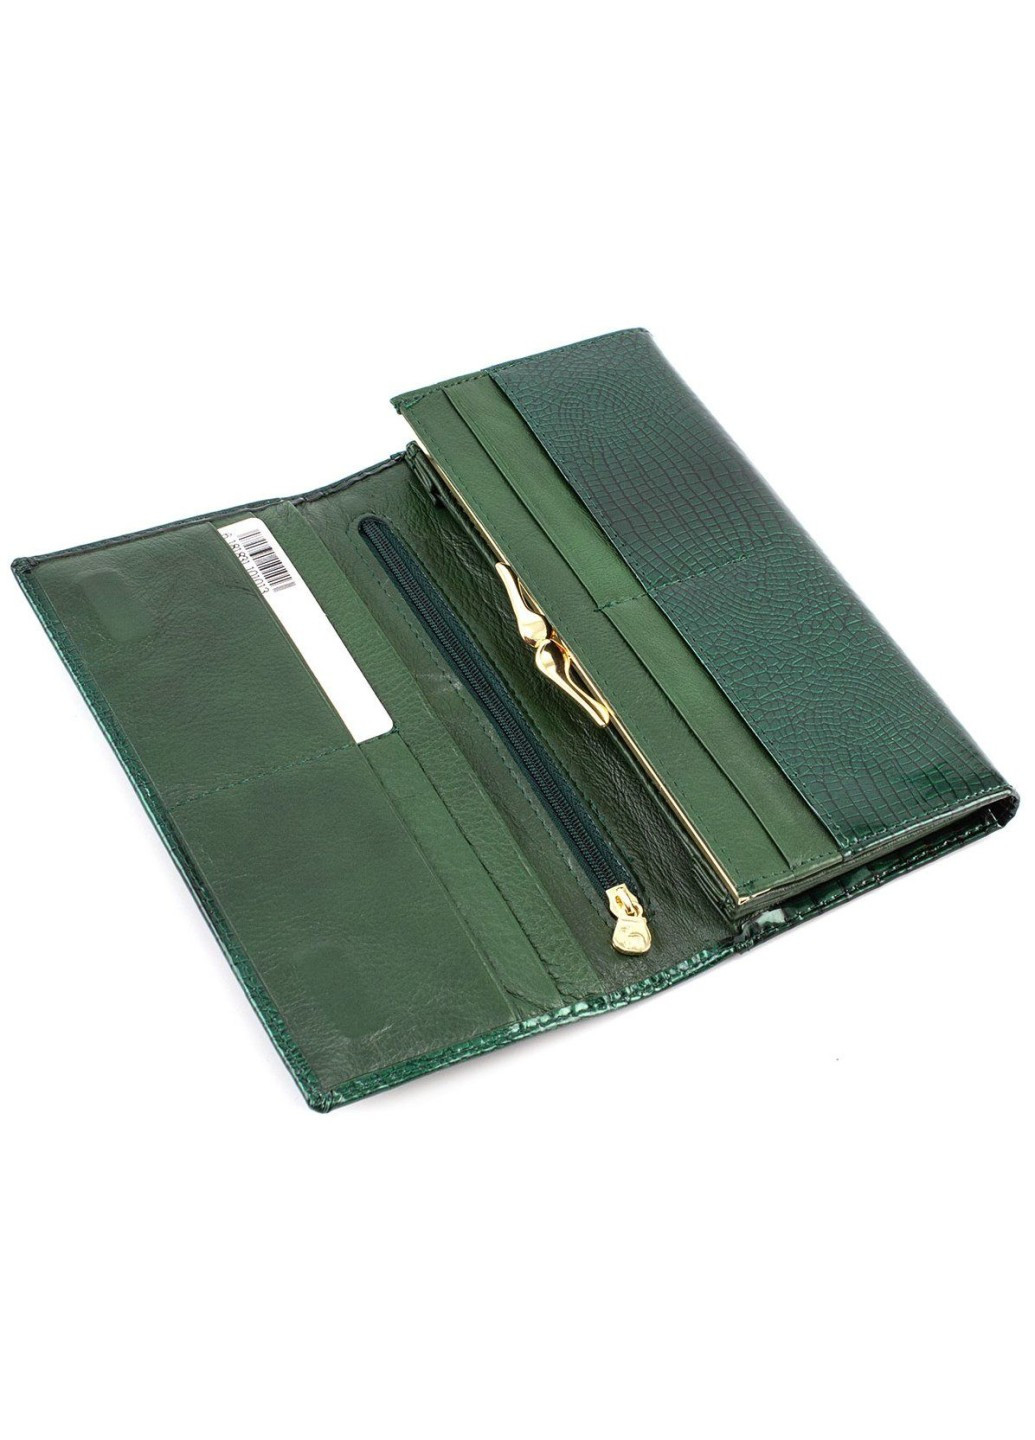 Стильний гаманець з лаковою тисненою шкірою MC-403-1010-7 (JZ6577) зелений Marco Coverna (259752563)